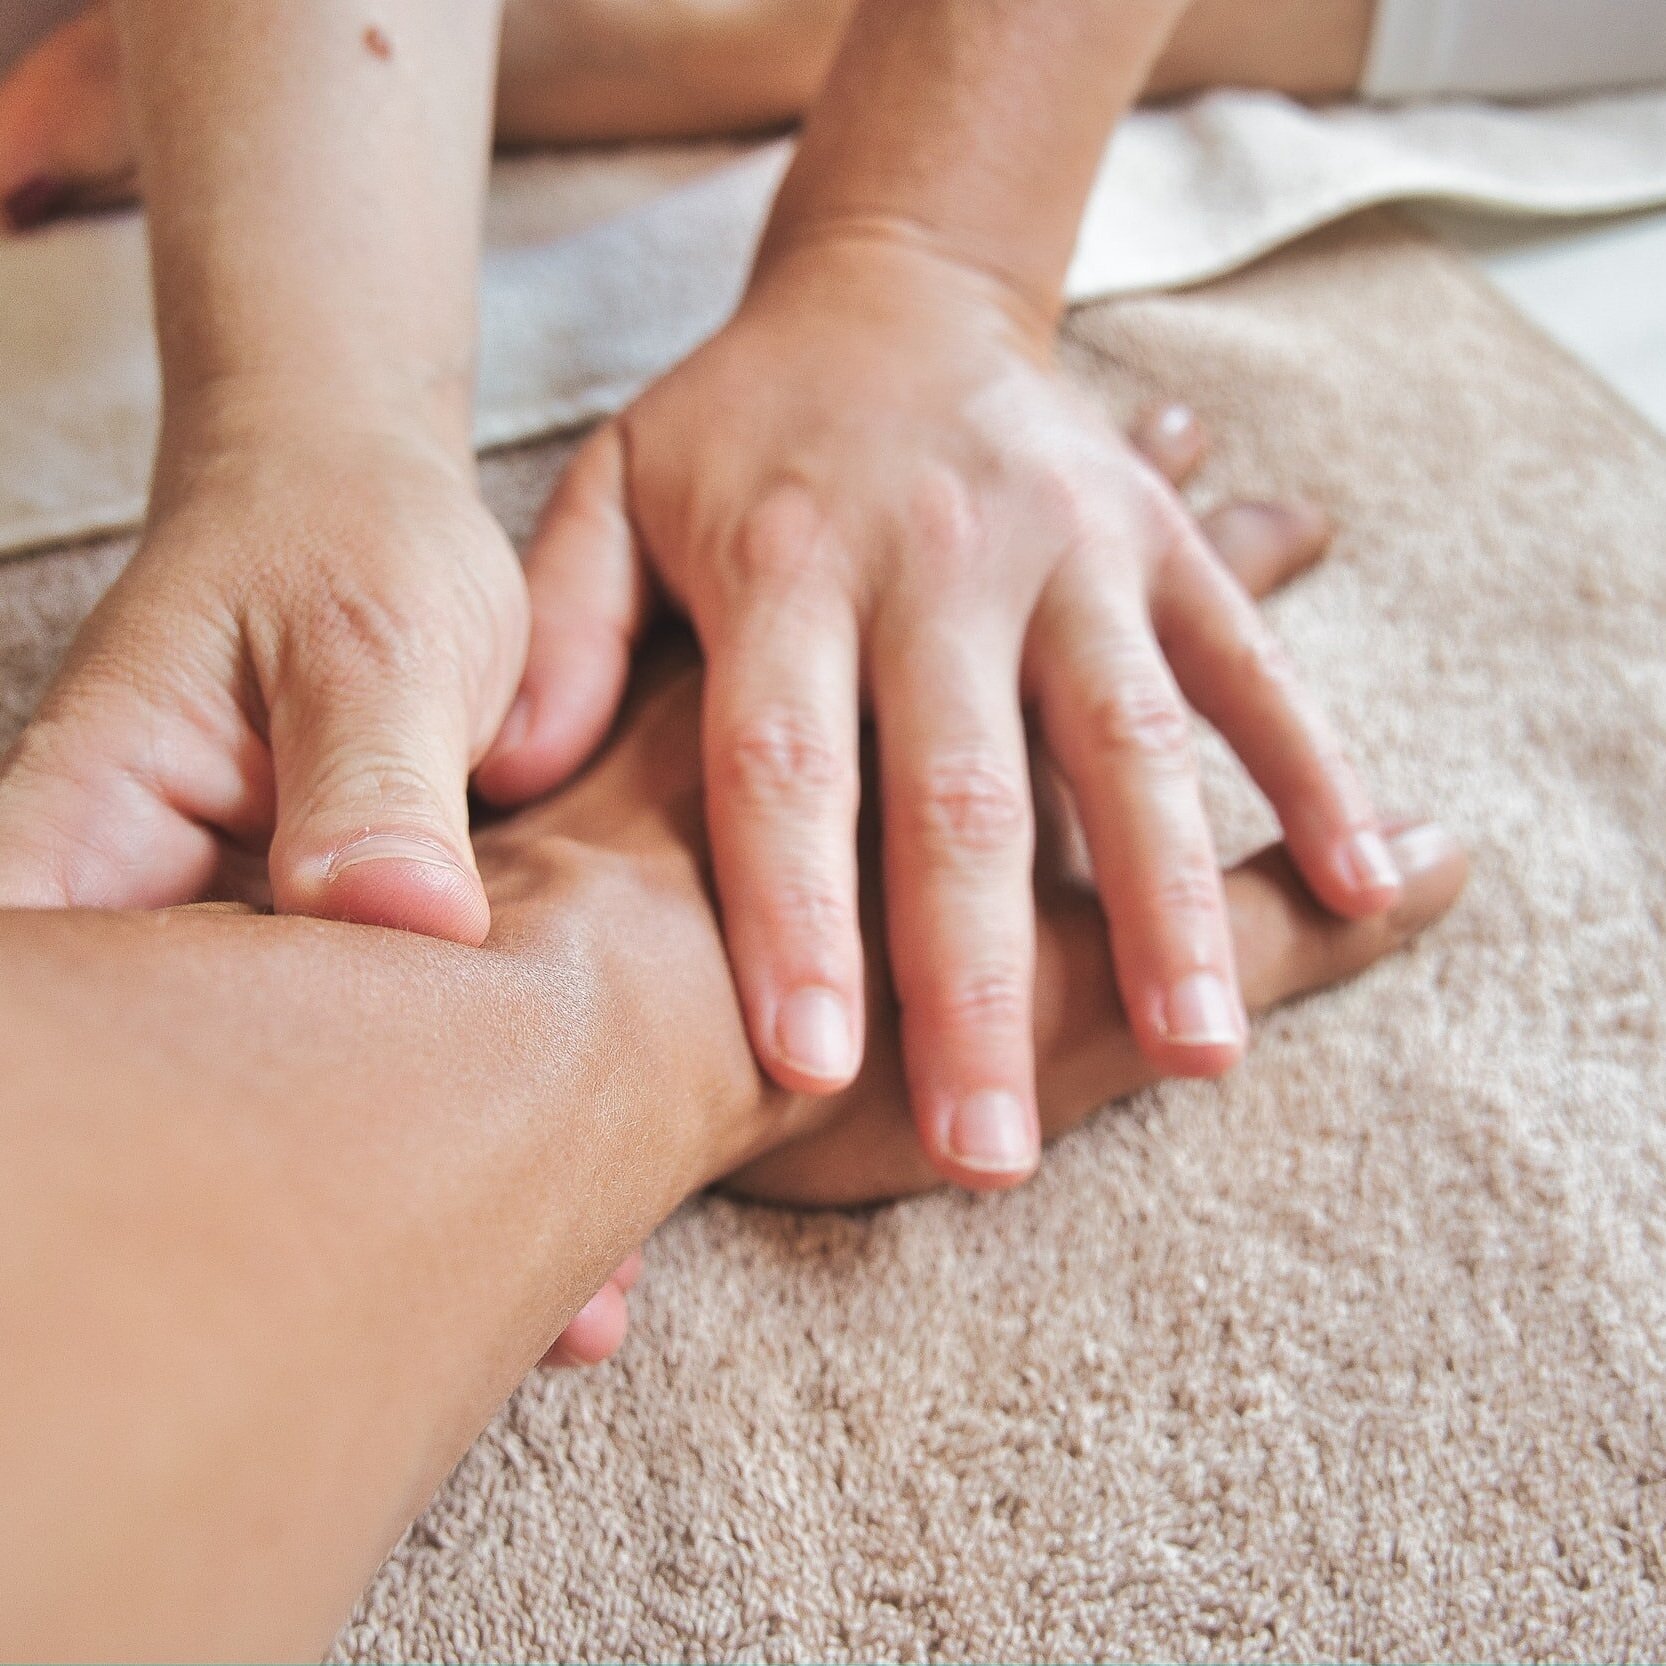 Fusion Day Spa - Therapeutic Massage Austin